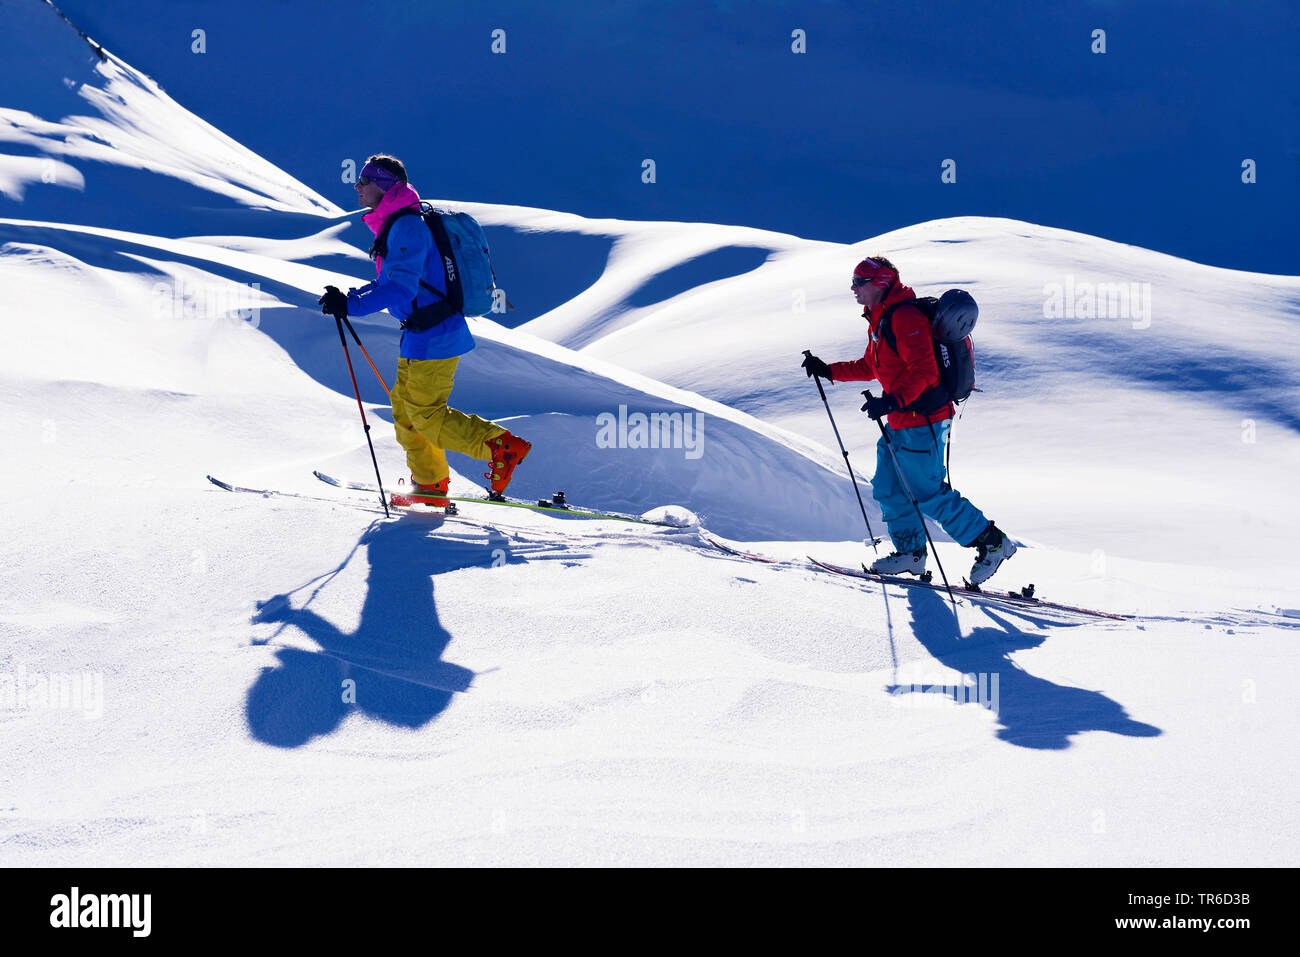 Ski tourers in snowy mountain scenery, France, Savoie, Sainte Foy Tarentaise Stock Photo